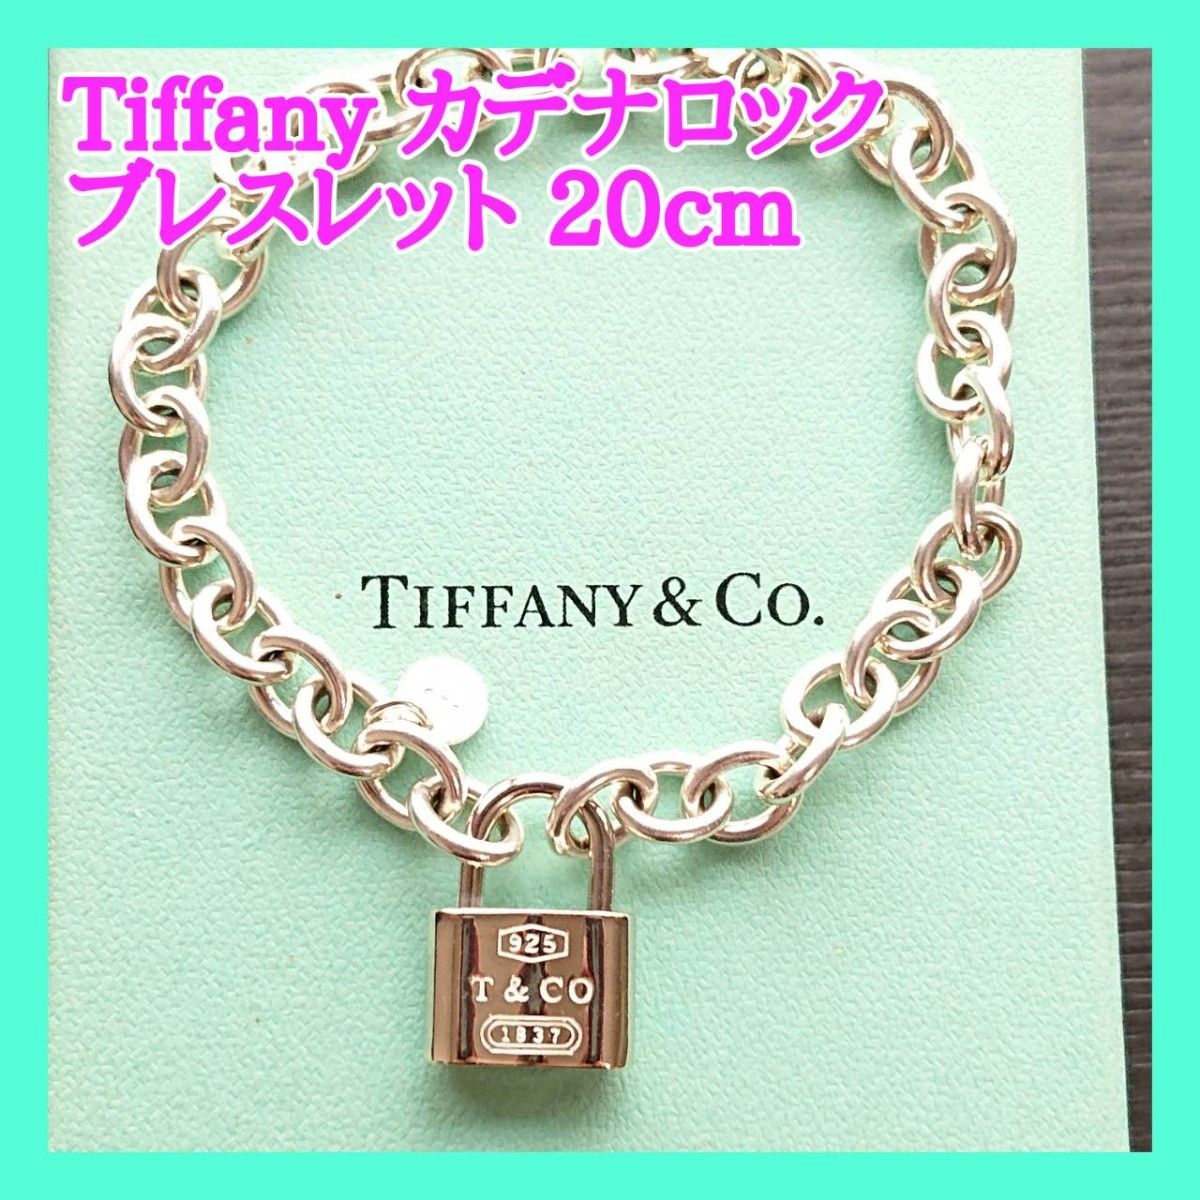 Tiffany & Co. パドロック チェーン ブレスレットカデナ 南京錠